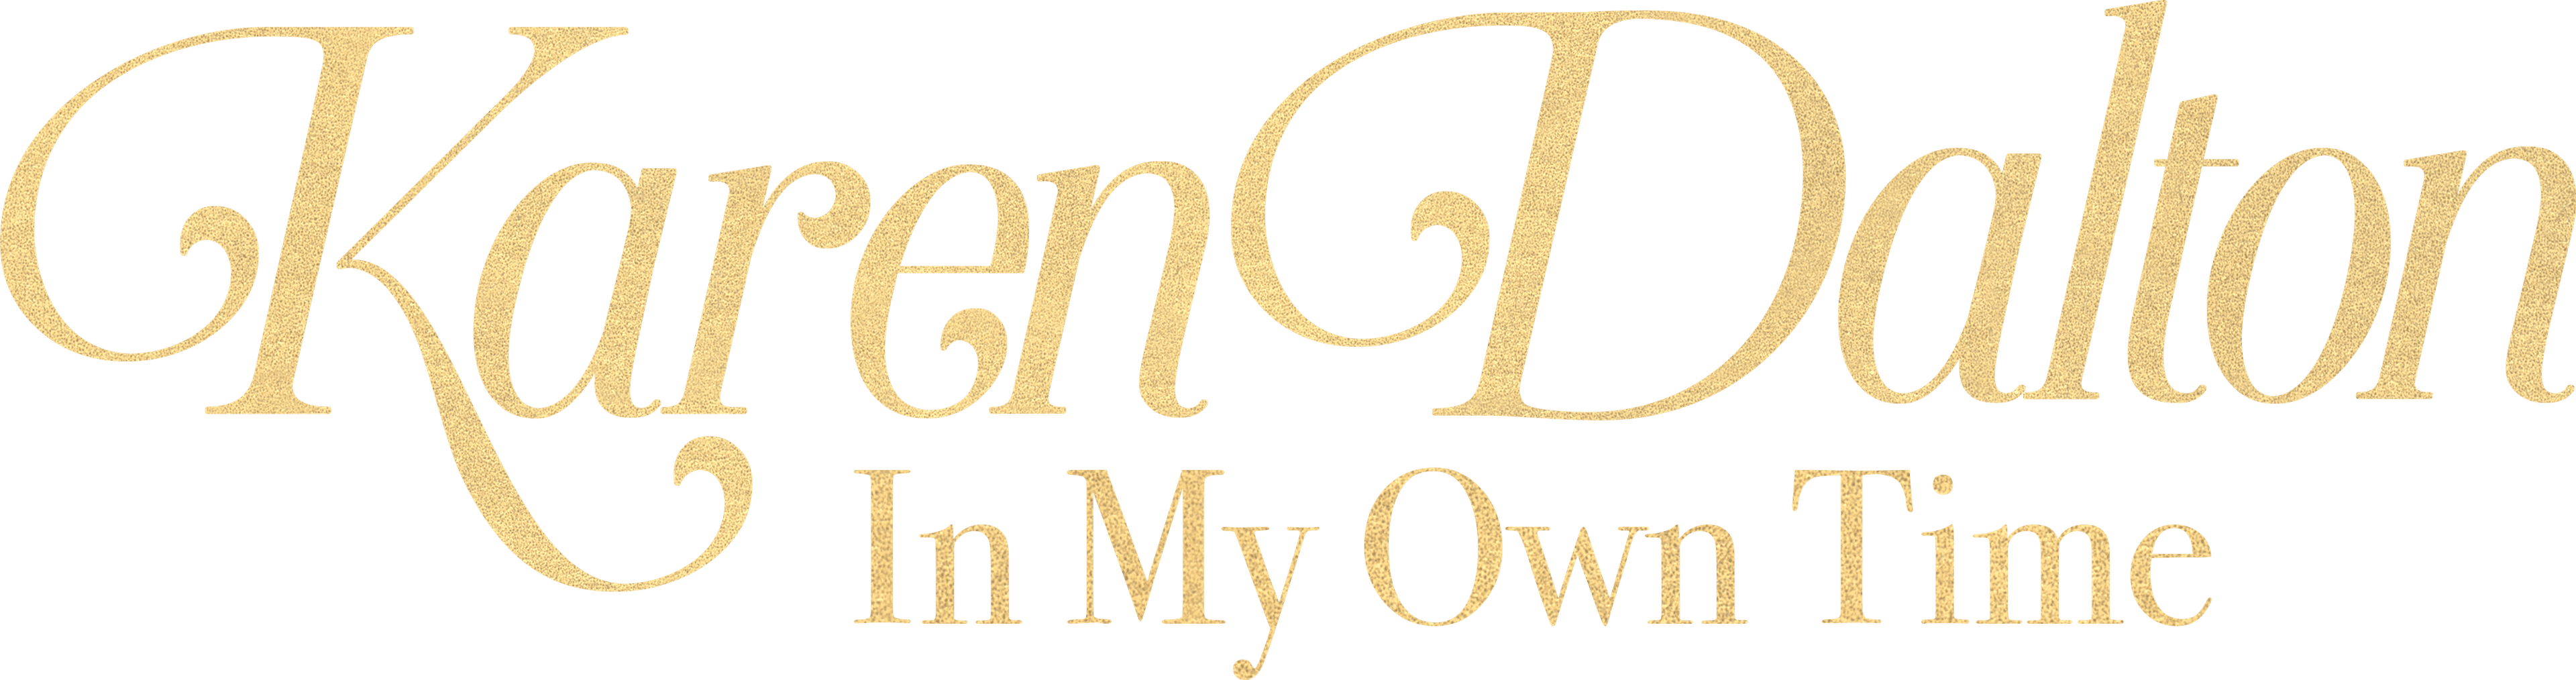 Karen Dalton: In My Own Time logo